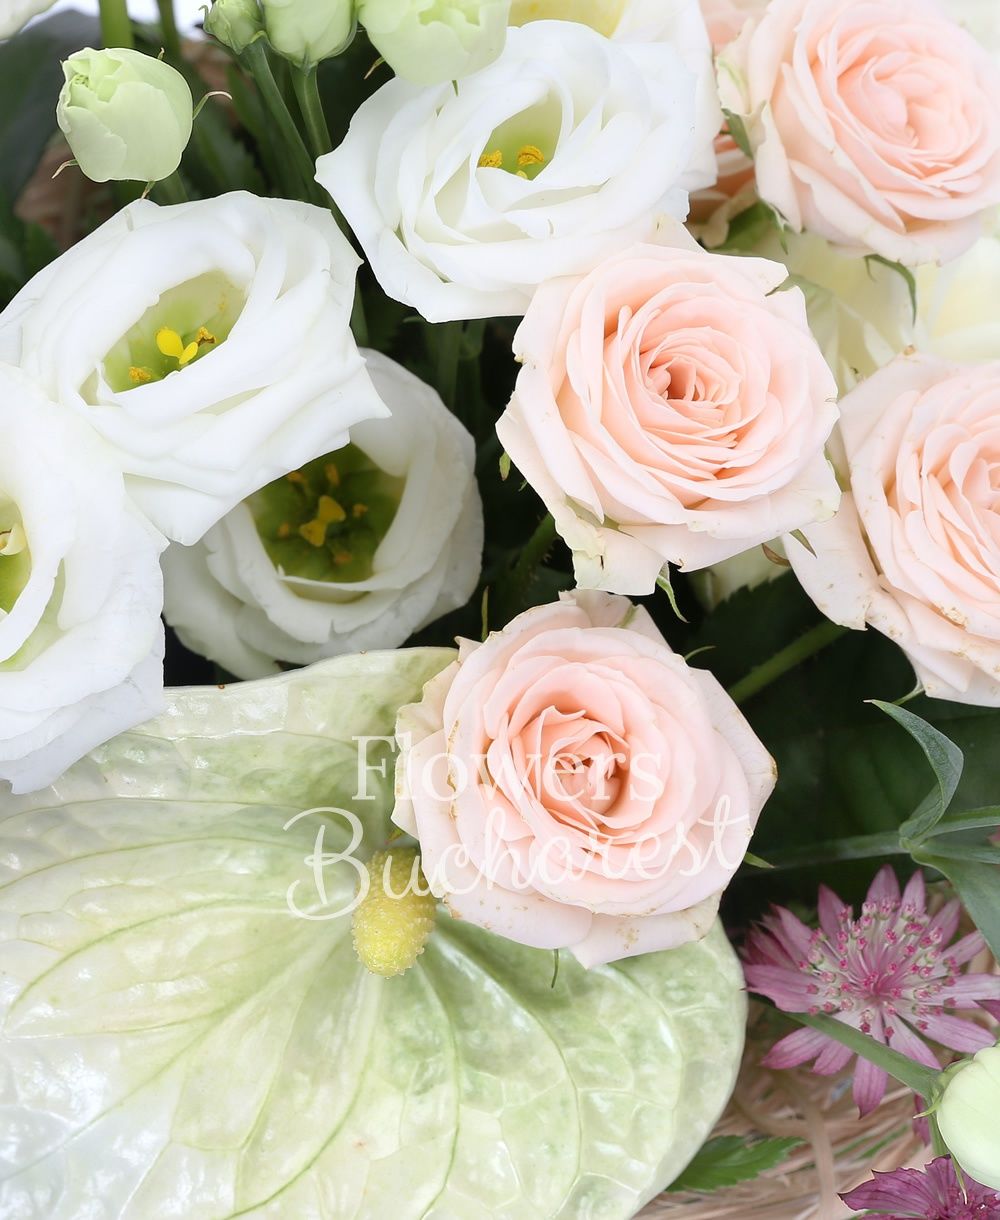 3 white anthurium, 3 cream miniroses, 3 white lisianthus, 3 white roses, 3 pink astranția, greenery